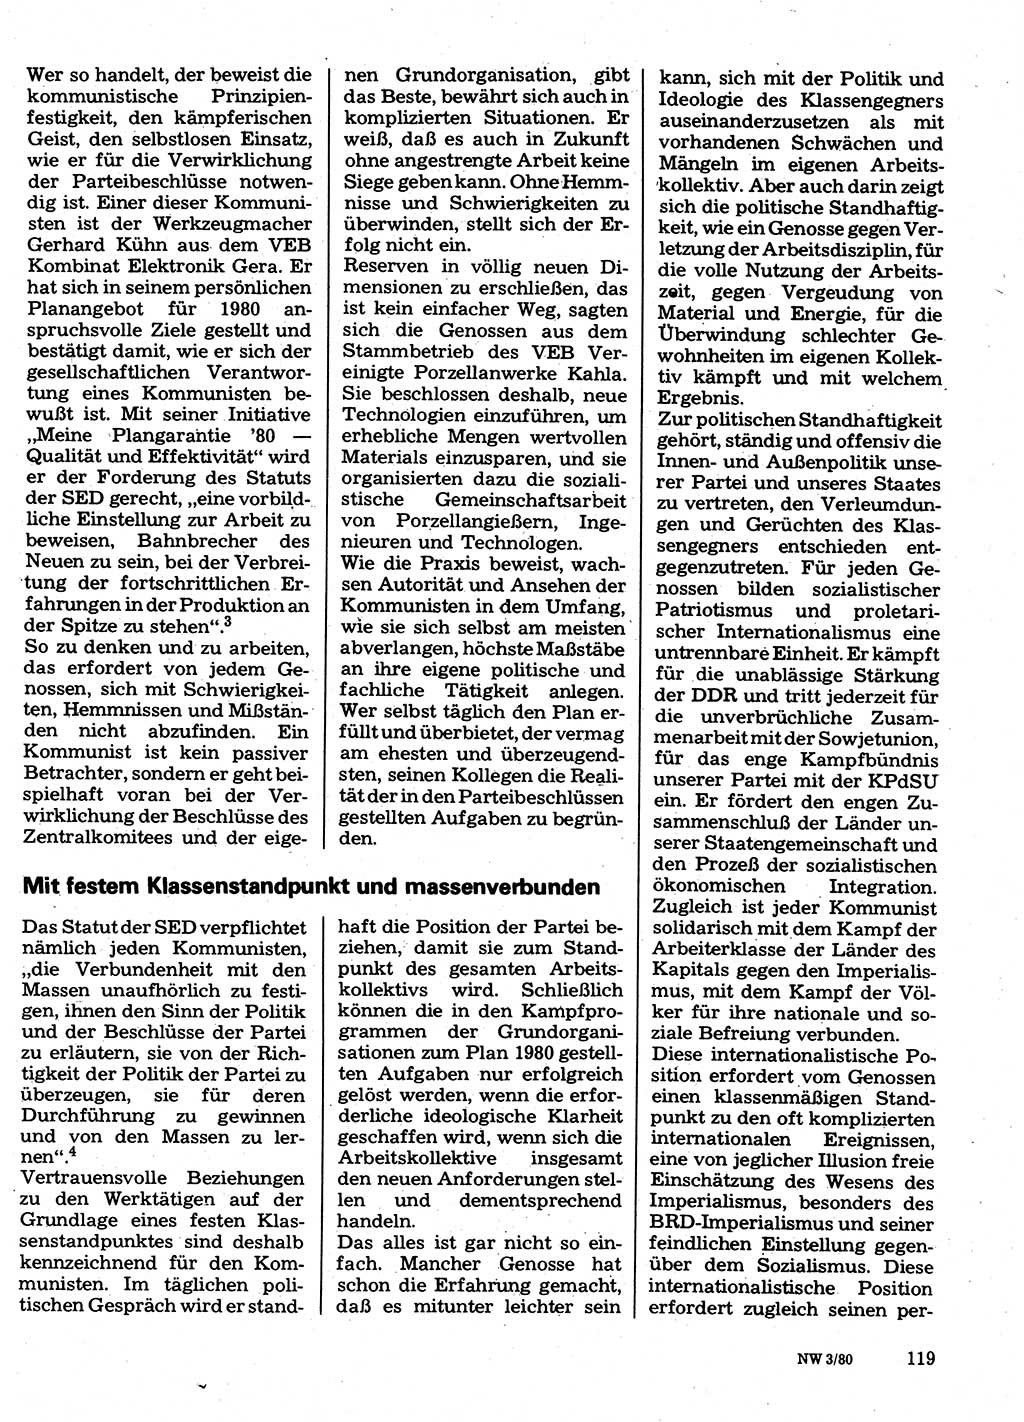 Neuer Weg (NW), Organ des Zentralkomitees (ZK) der SED (Sozialistische Einheitspartei Deutschlands) für Fragen des Parteilebens, 35. Jahrgang [Deutsche Demokratische Republik (DDR)] 1980, Seite 119 (NW ZK SED DDR 1980, S. 119)